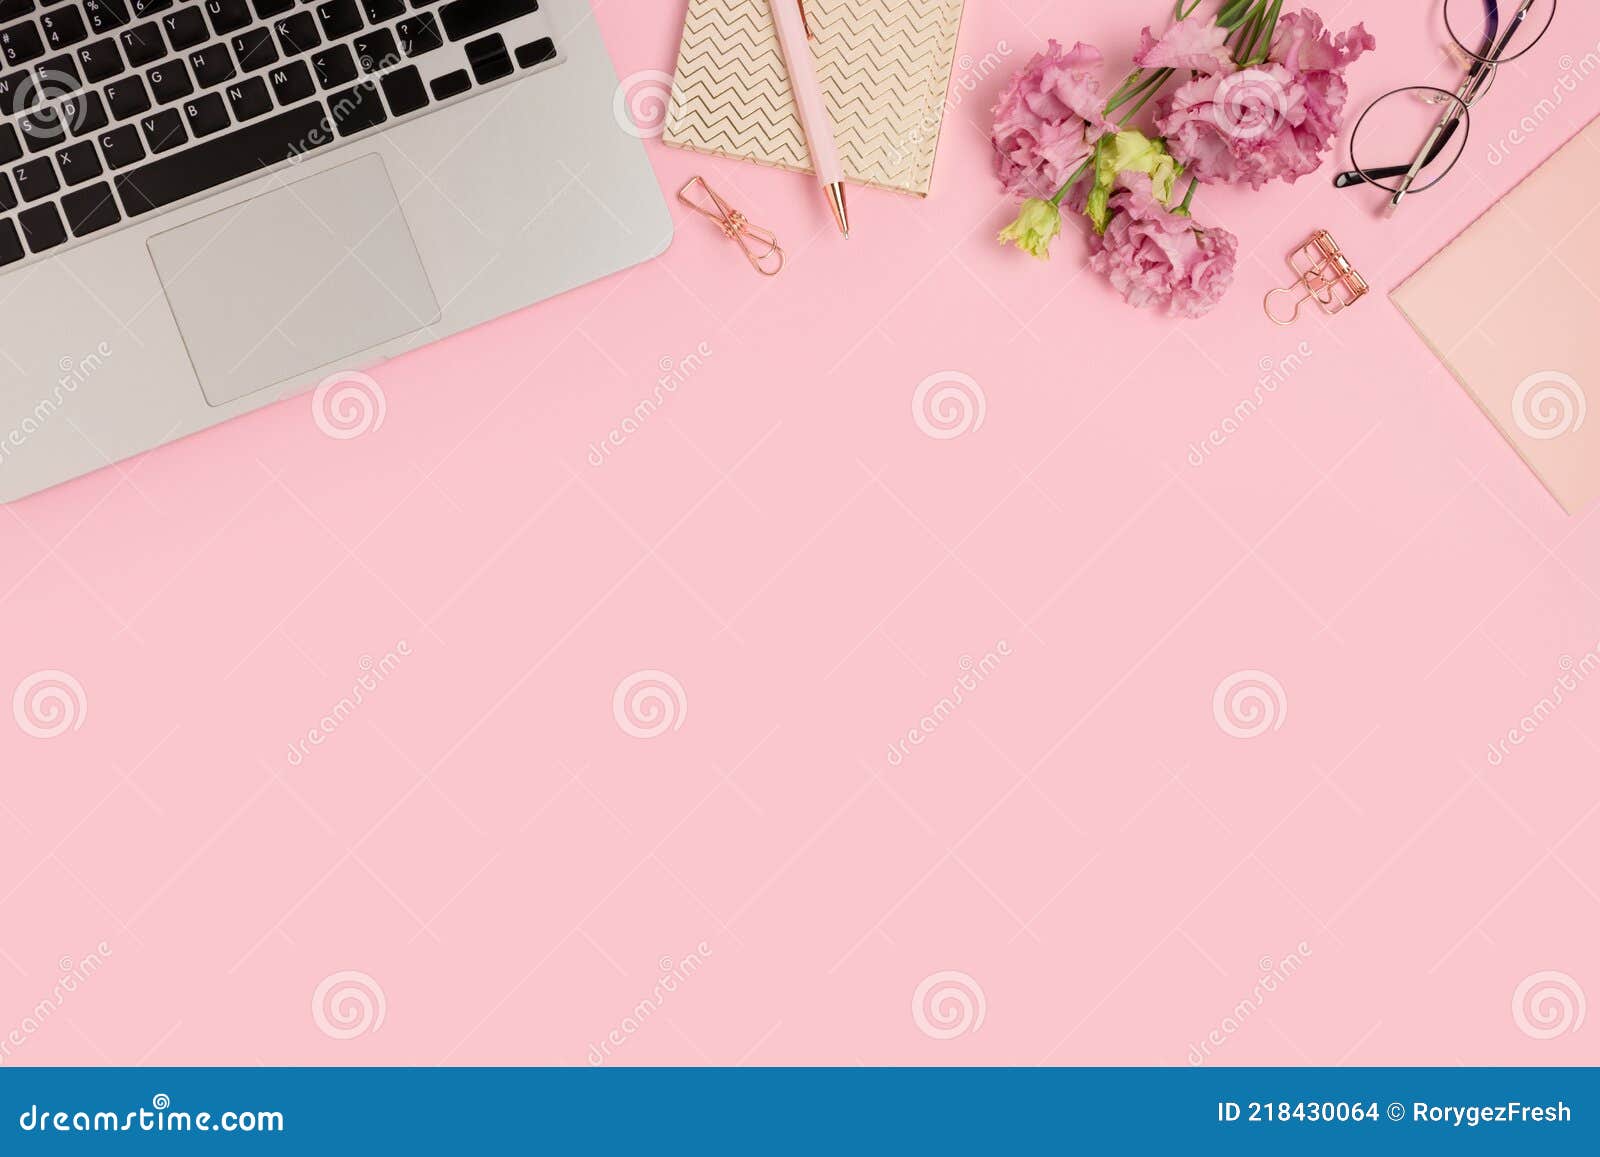 Với văn phòng nữ tính, bạn sẽ cảm thấy như đang làm việc tại một không gian sang trọng và đầy phong cách. Với các chi tiết như màu hồng tươi sáng, hoa tươi và phụ kiện giản đơn, đây là một không gian làm việc đầy sức sống và năng lượng tích cực. 